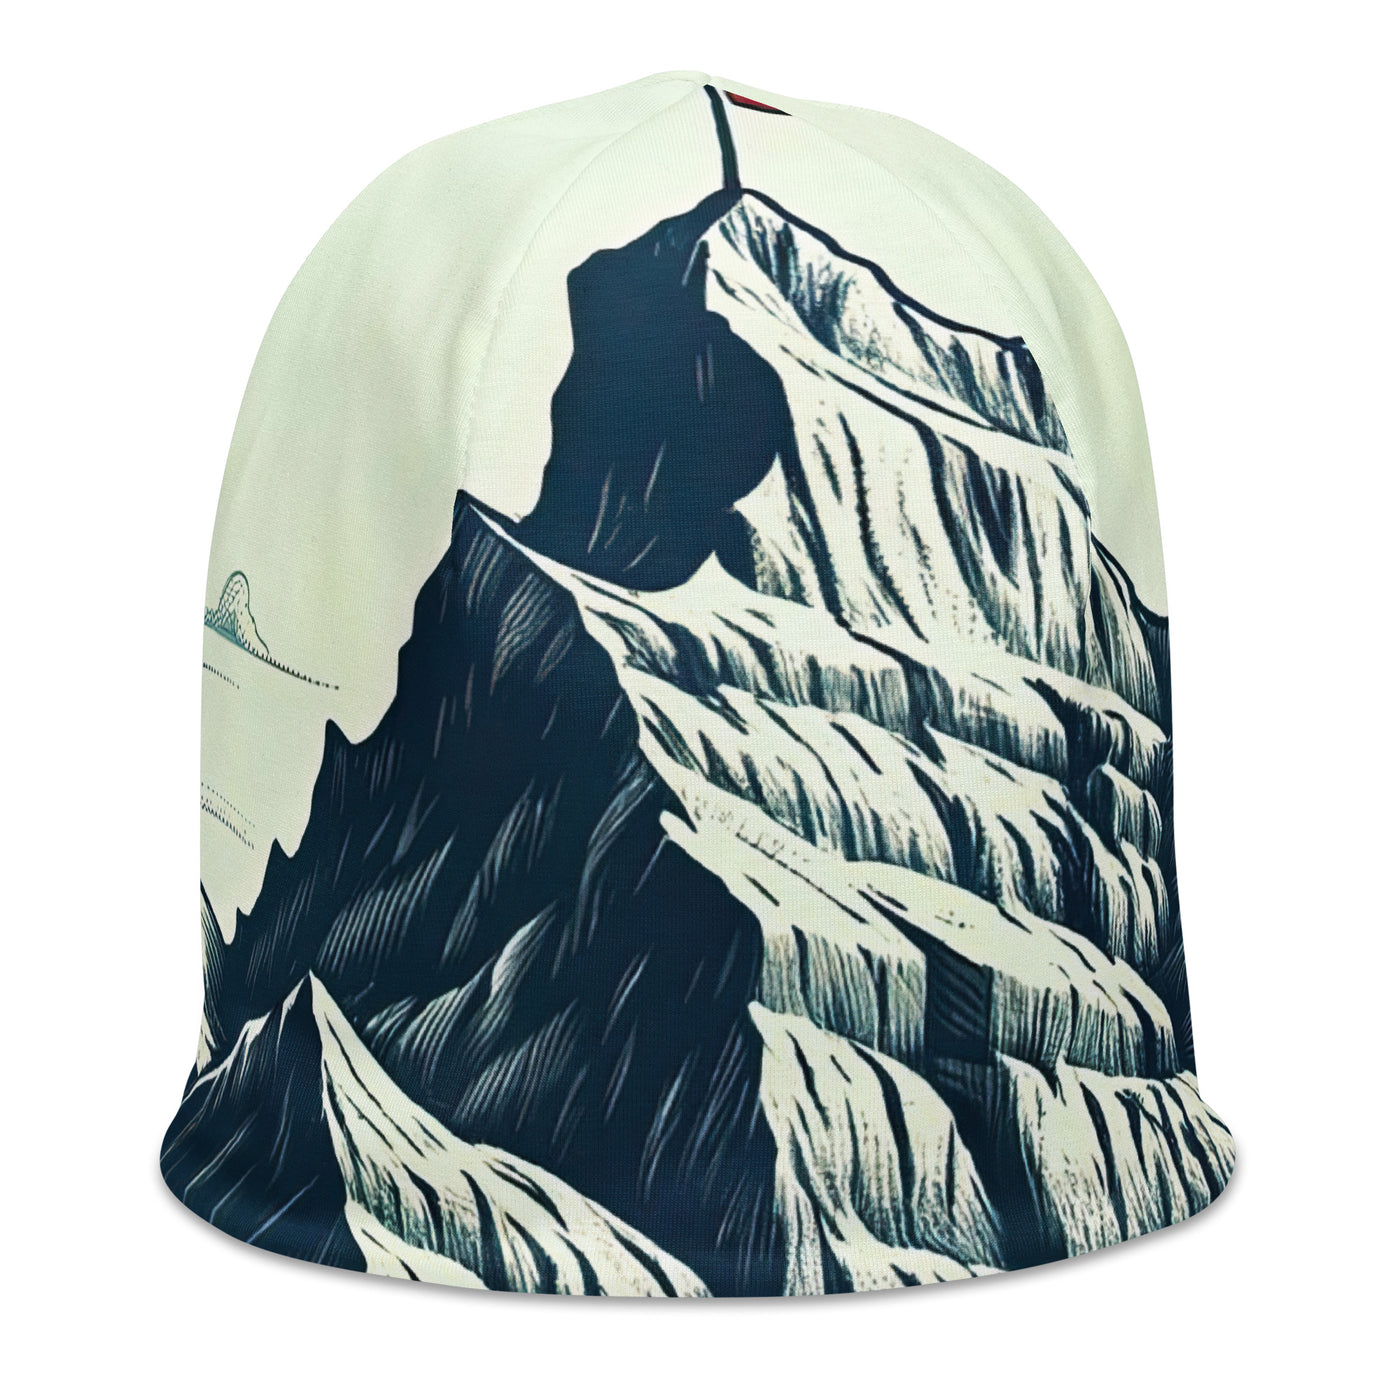 Ausgedehnte Bergkette mit dominierendem Gipfel und wehender Schweizer Flagge - Beanie (All-Over Print) berge xxx yyy zzz